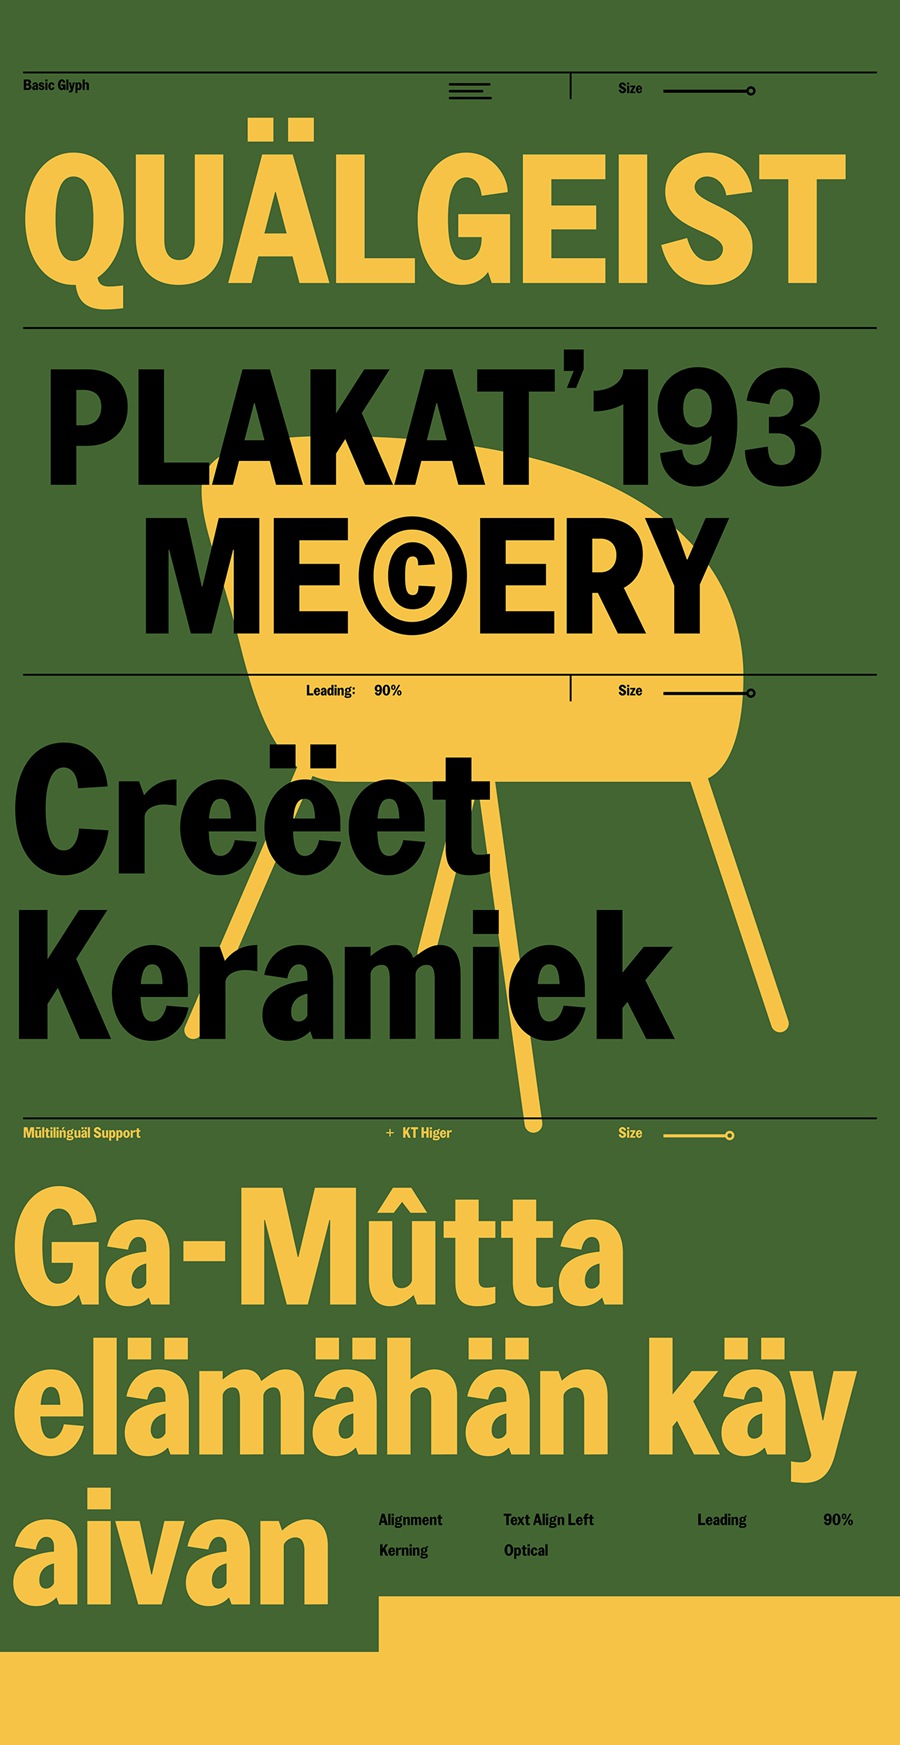 复古怪诞汽车灵感品牌设计海报排版英文字体 KT Mogli - Dynamic Sans Serif 设计素材 第3张